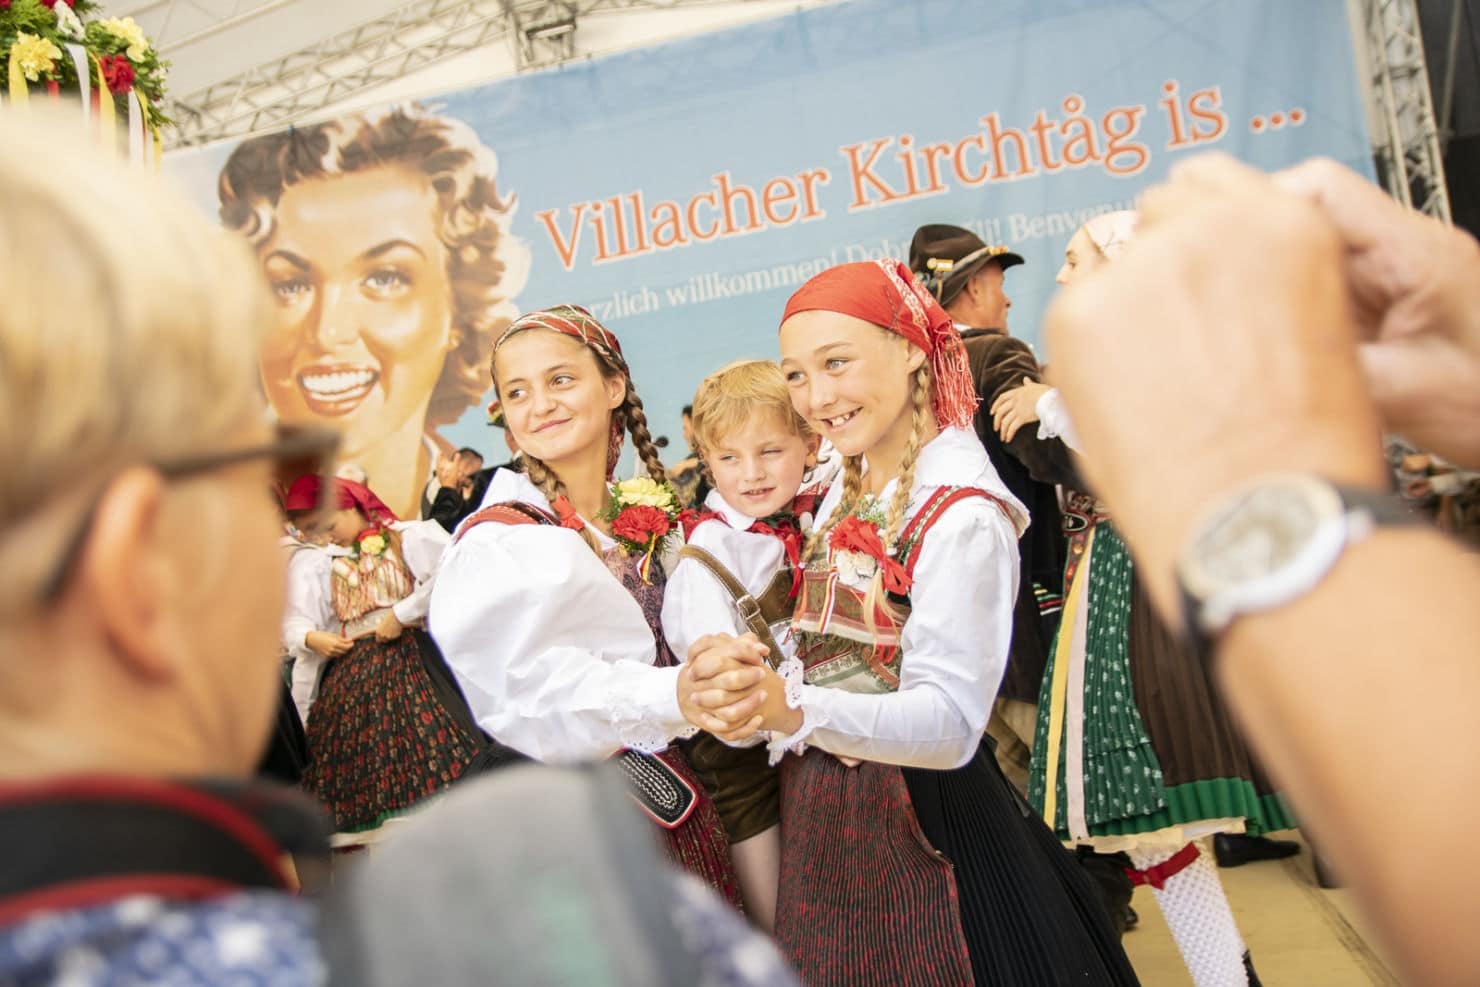 Mit der Messe in der Stadtpfarrkirche und dem anschließenden Bieranstich wurde der 75. Villacher Kirchtag heute feierlich eröffnet.